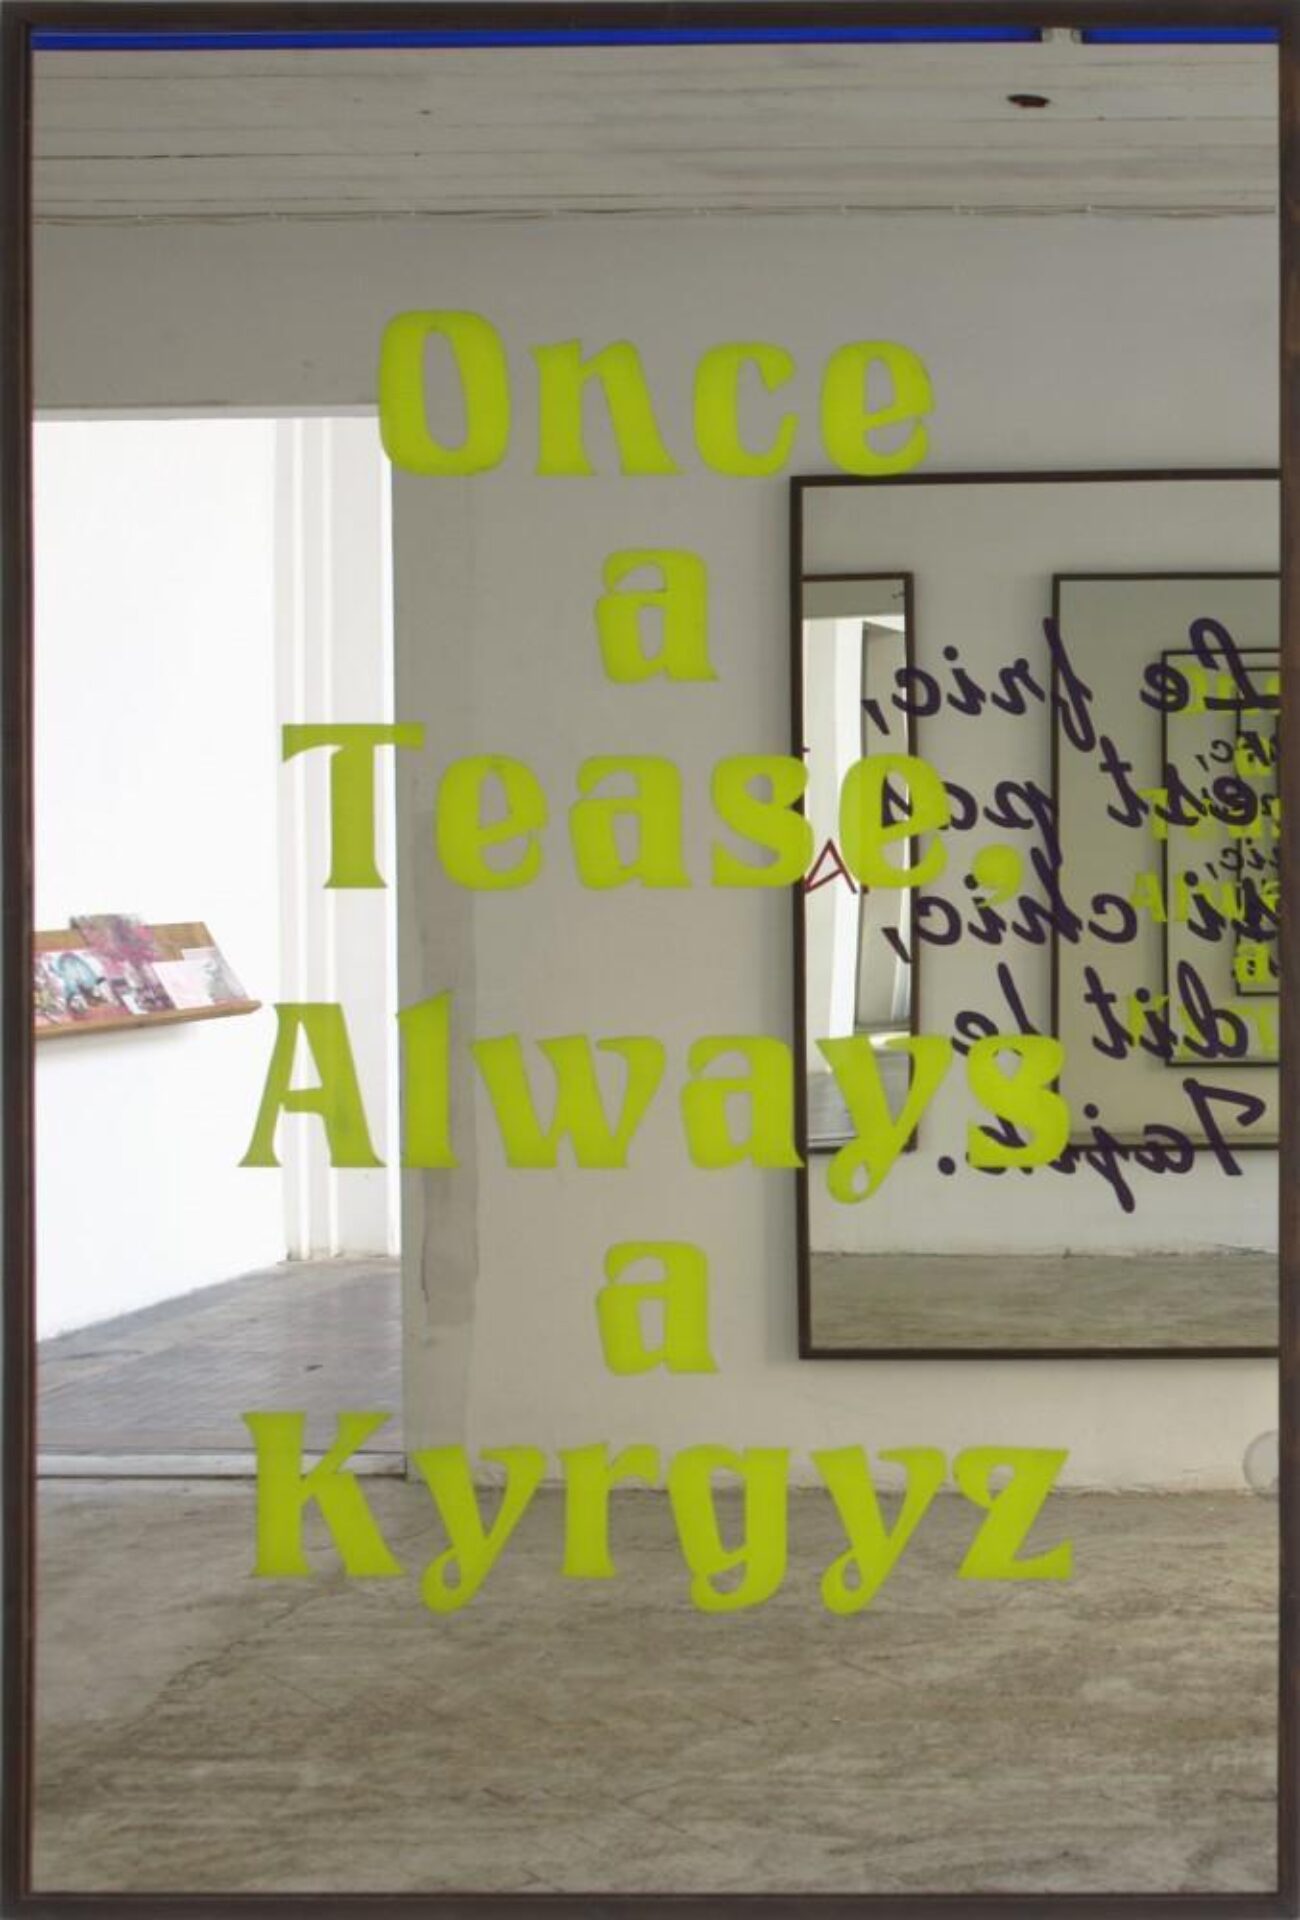 Slavs and Tatars, Nations 6 (Once a Tease, Always a Kyrgyz), 2012